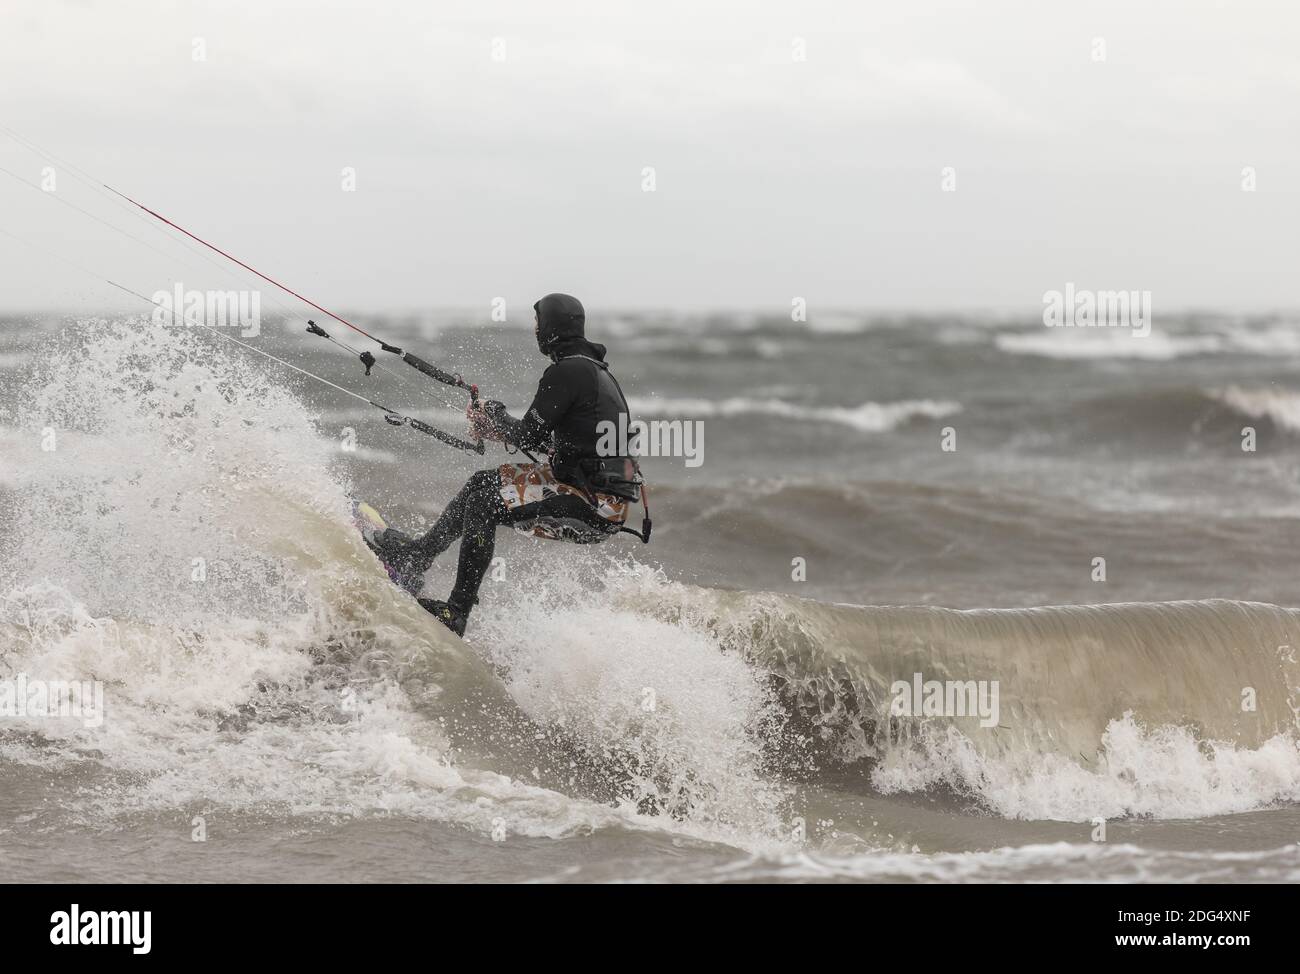 Un kiteboarder à cheval sur les vagues de la mer par un jour pluvieux. Boundary Bay, C.-B., Canada-novembre 17,2020. Mise au point sélective, photo de sport, photo de voyage. Banque D'Images